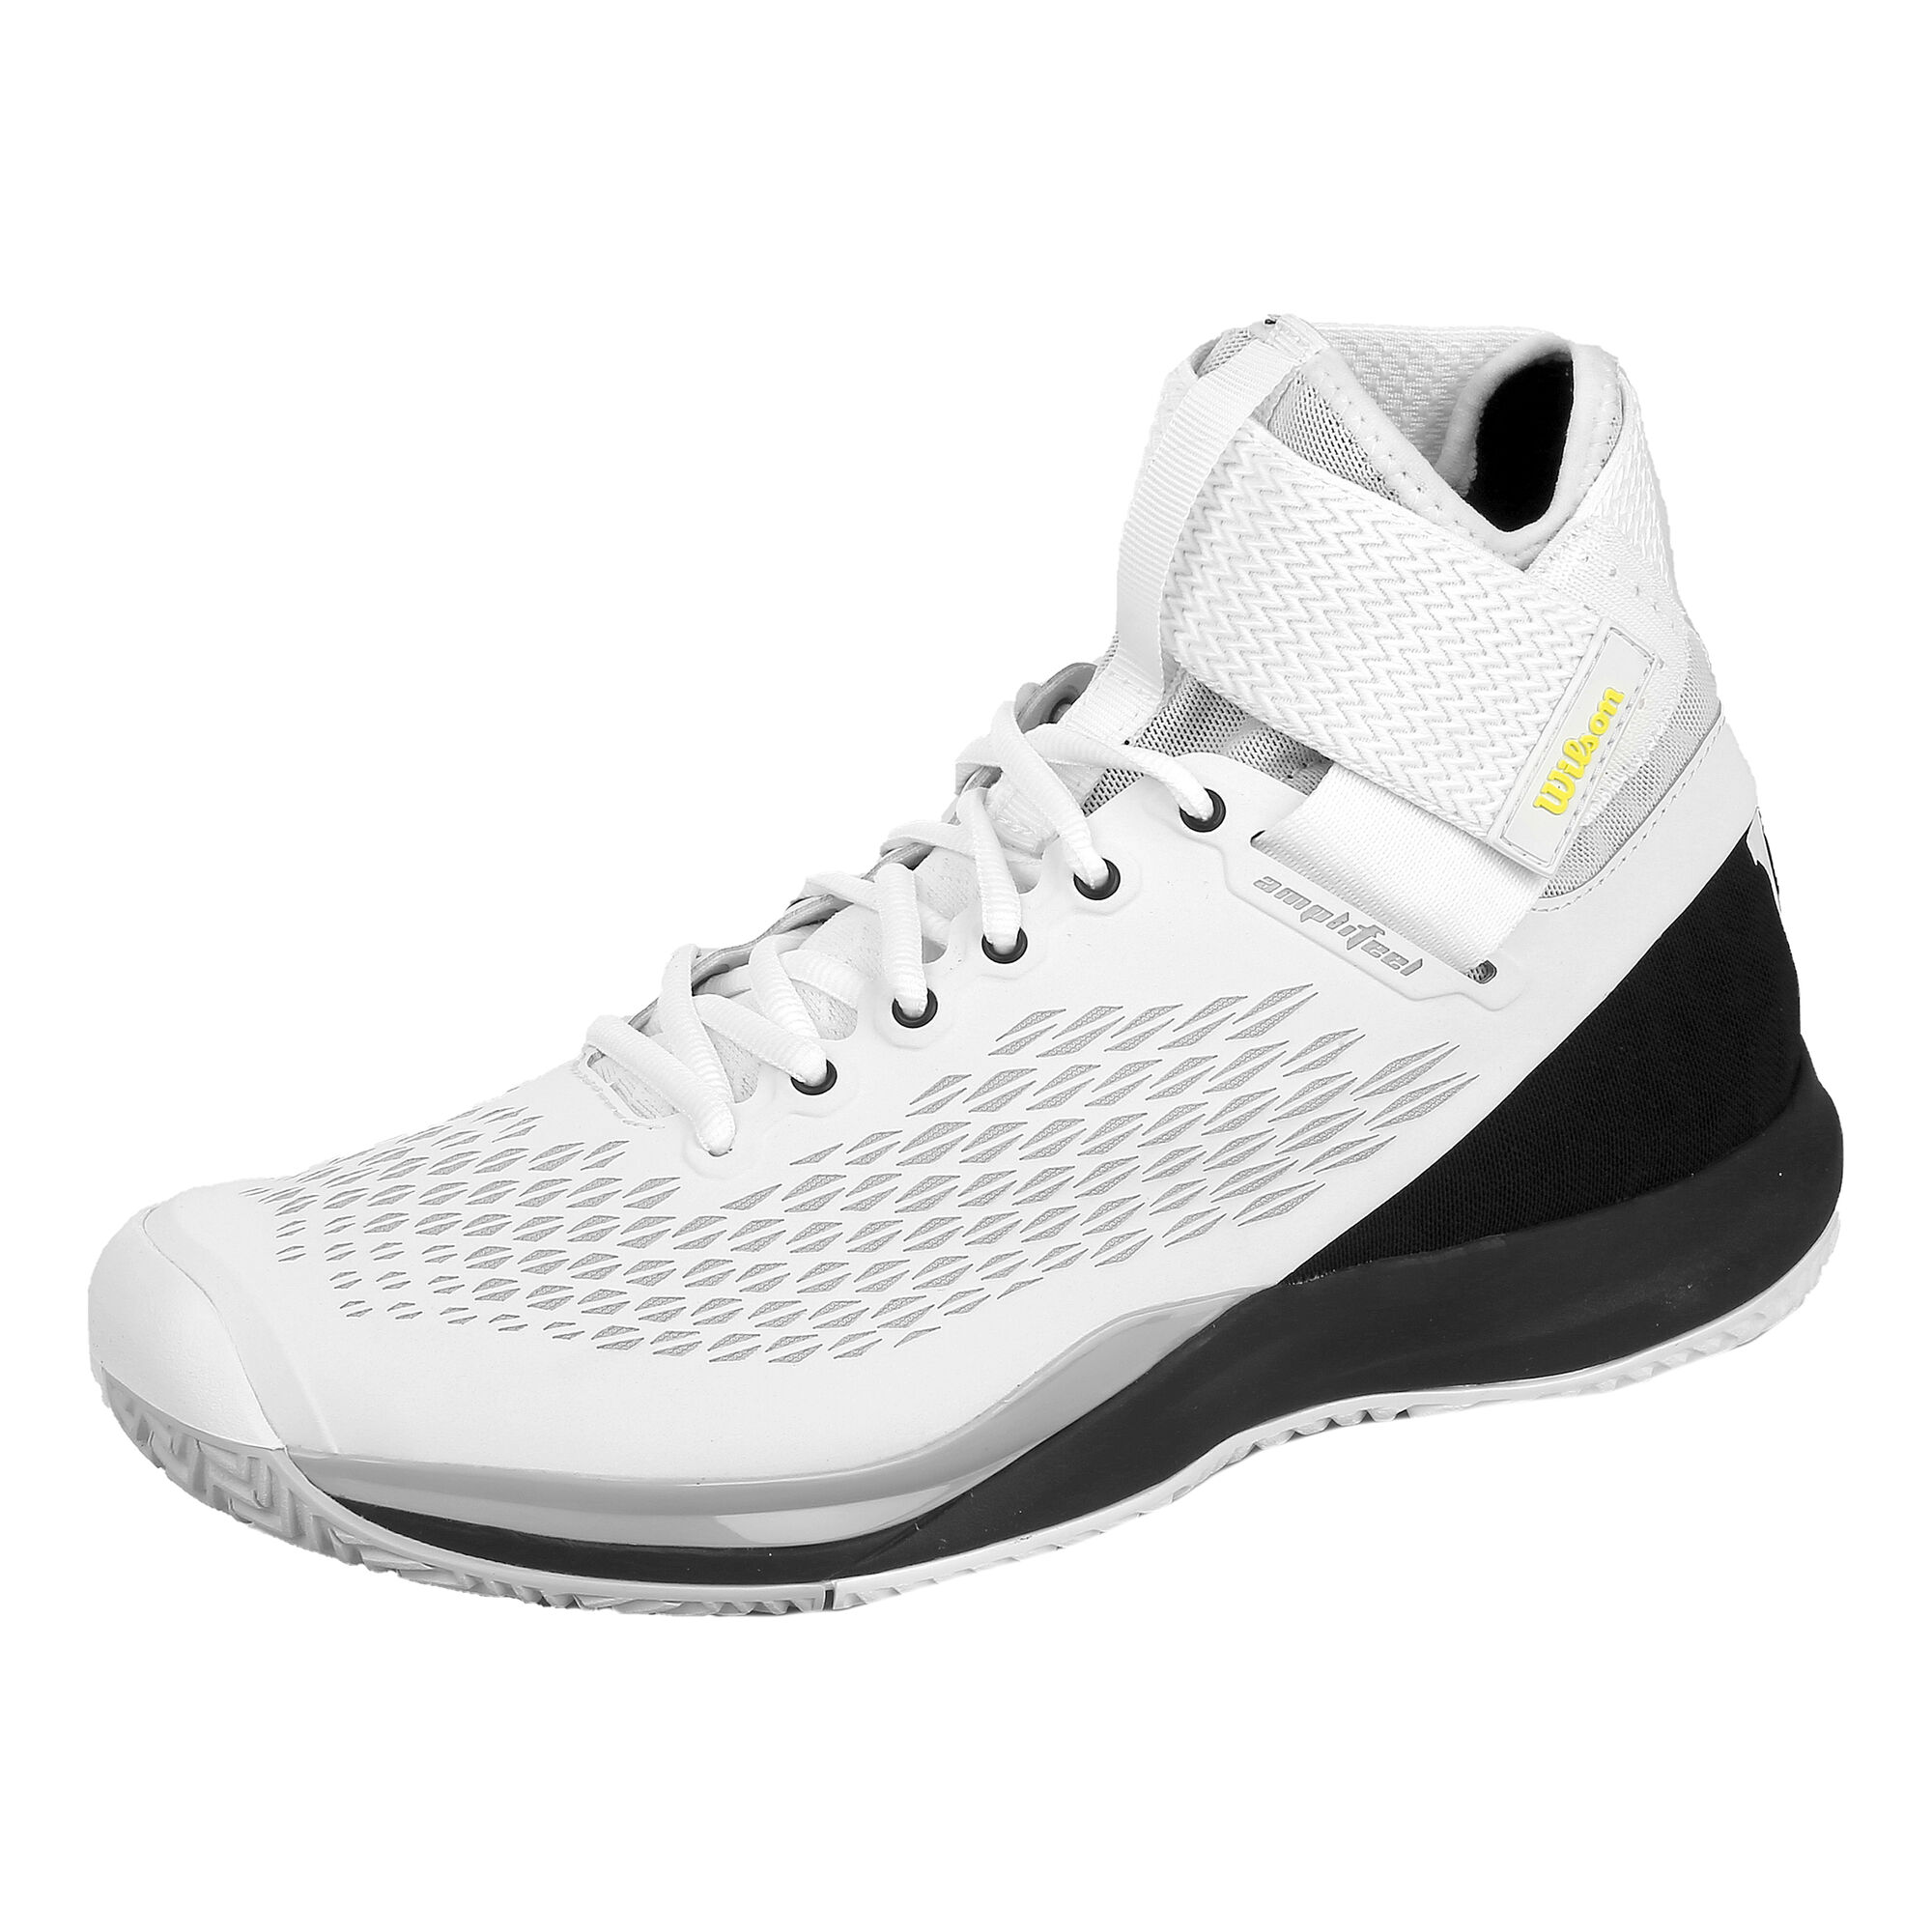 Buy Wilson Amplifeel 2.0 All Court Shoe Men White, Black online ...